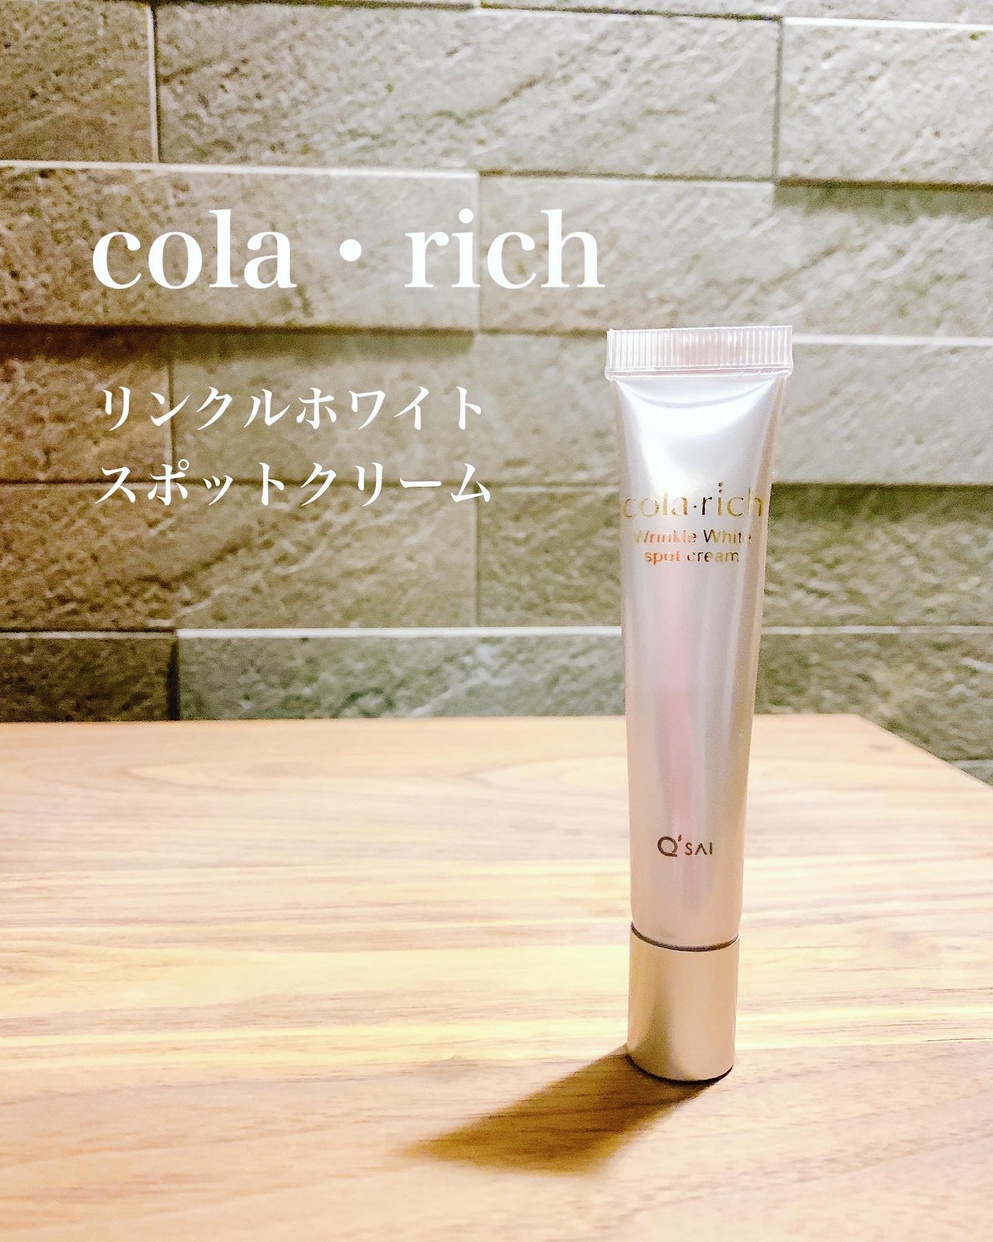 cola･rich(コラリッチ) リンクル ホワイト スポット クリームに関する日高あきさんの口コミ画像1